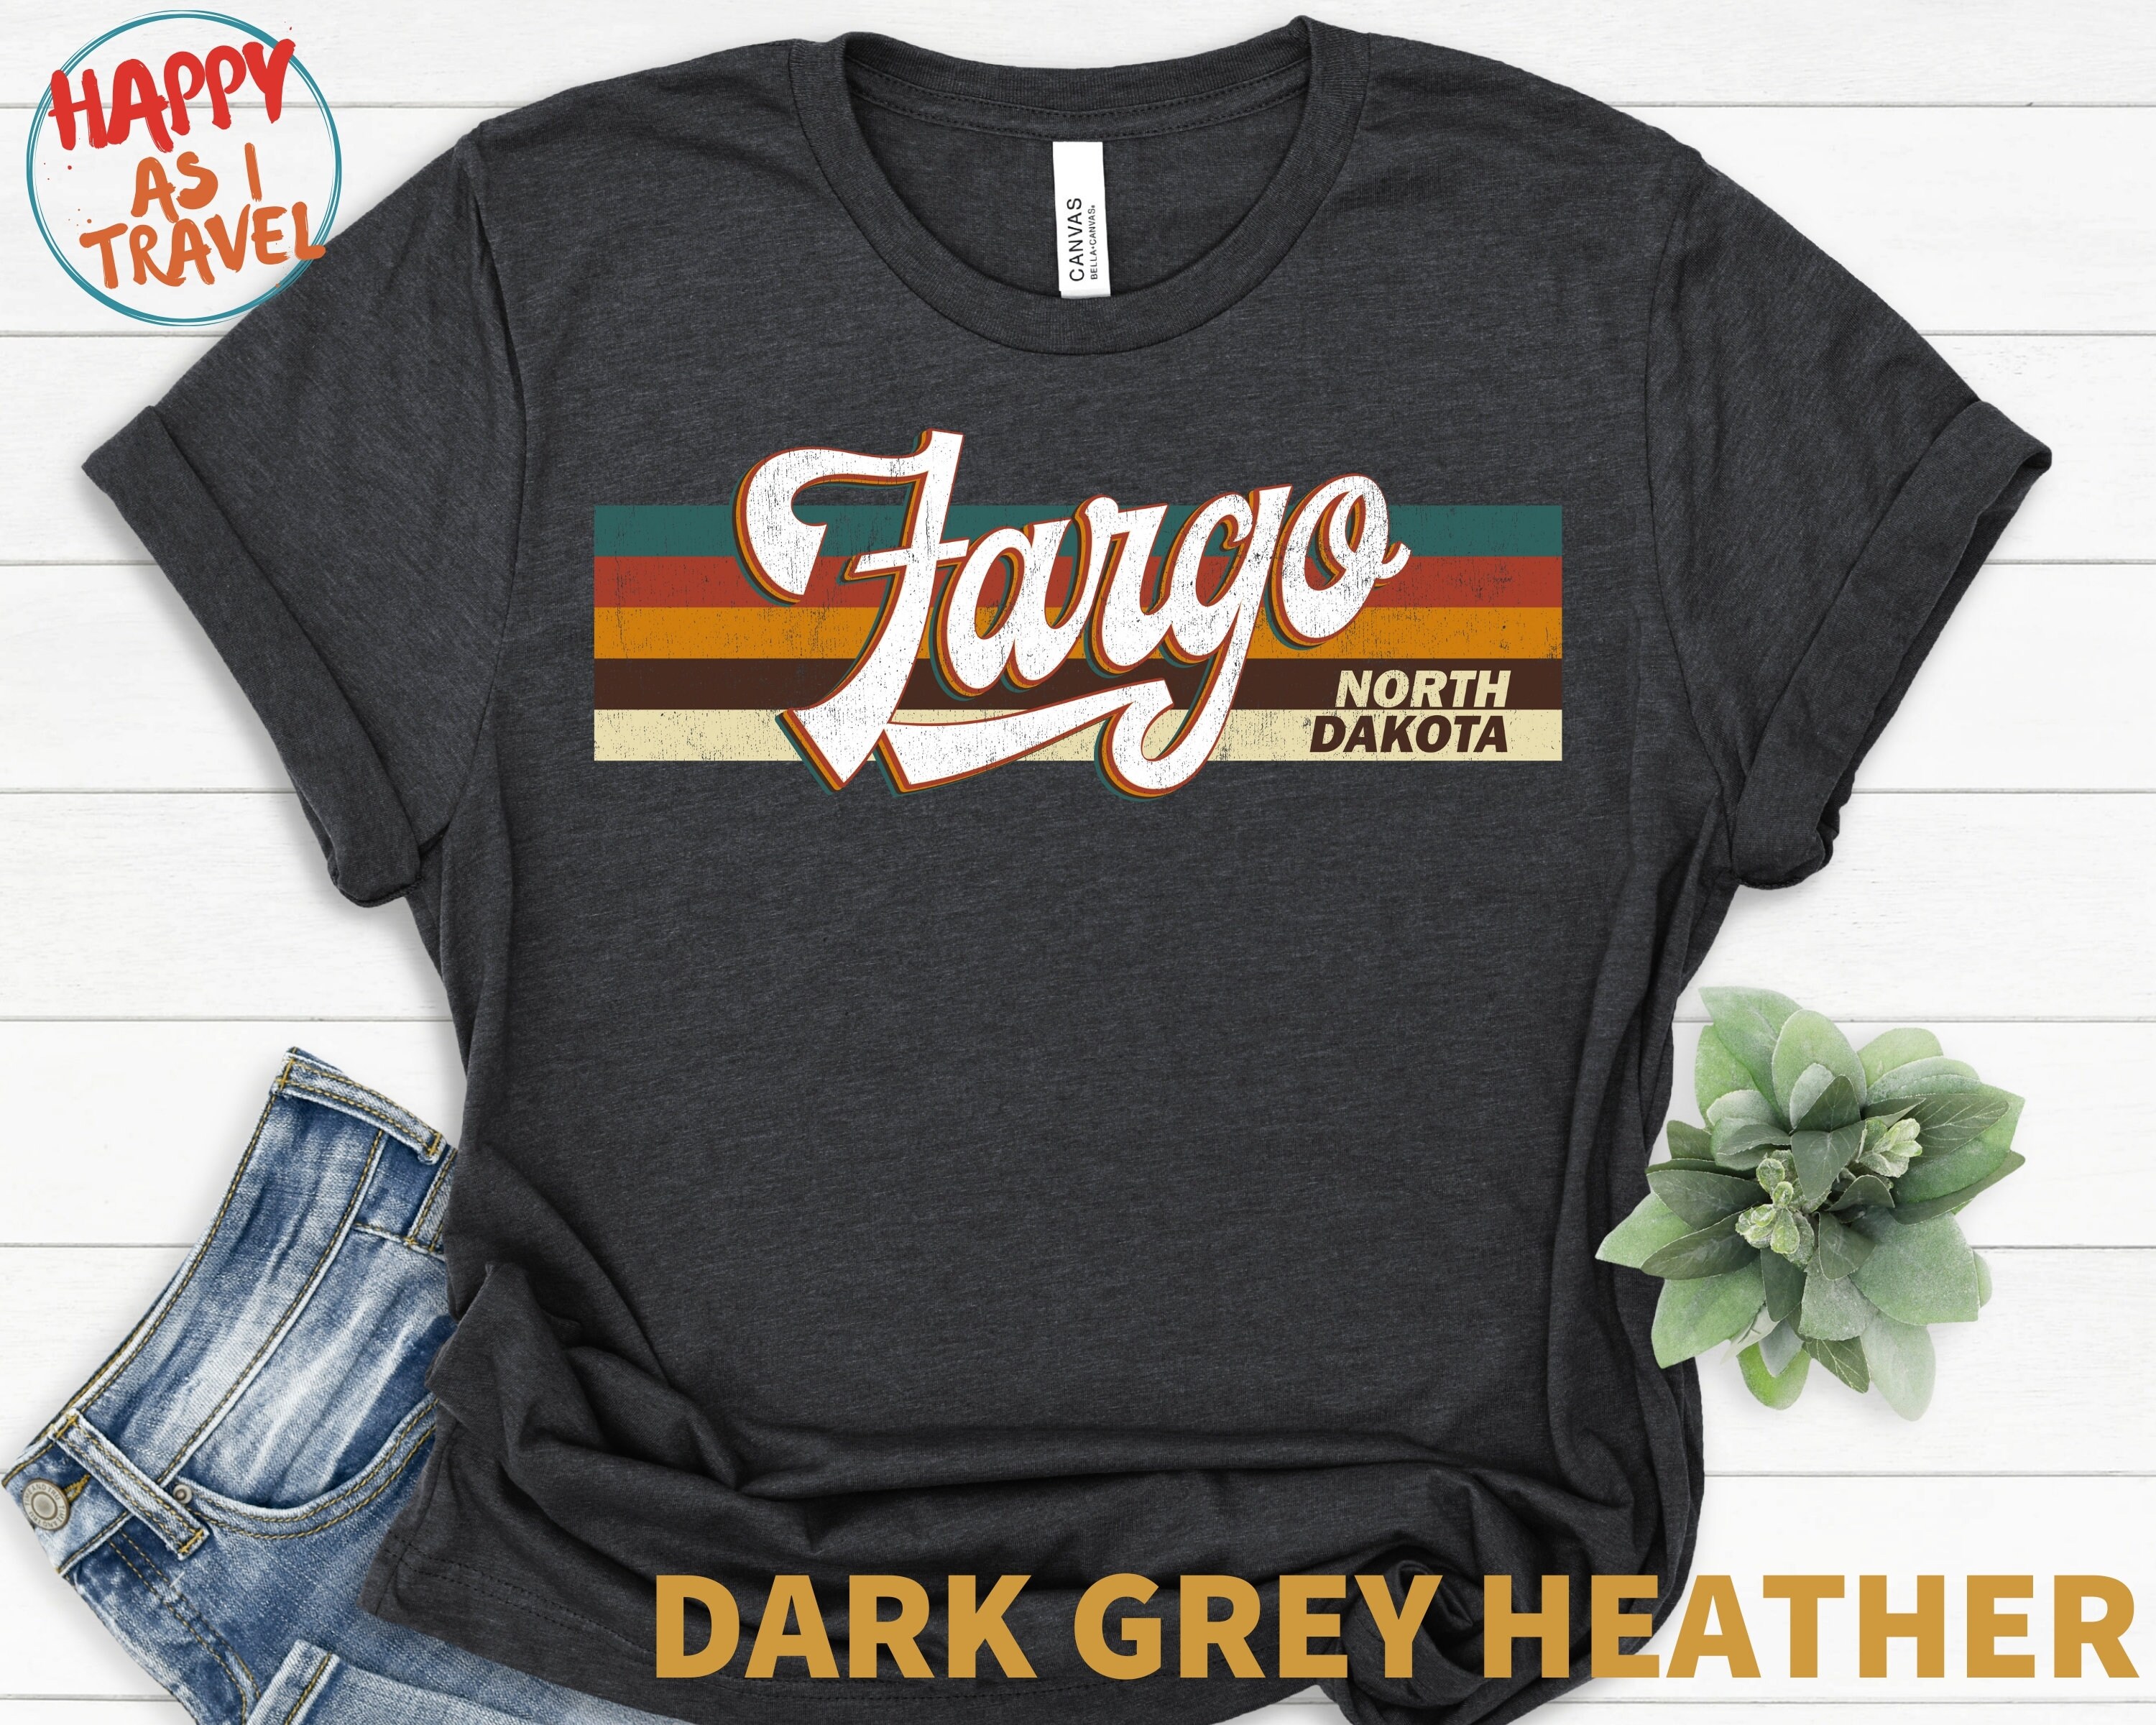 forsvinde kaste vindue Fargo Retro T-shirt Gift / Fargo North Dakota / Fargo Tourist | Etsy